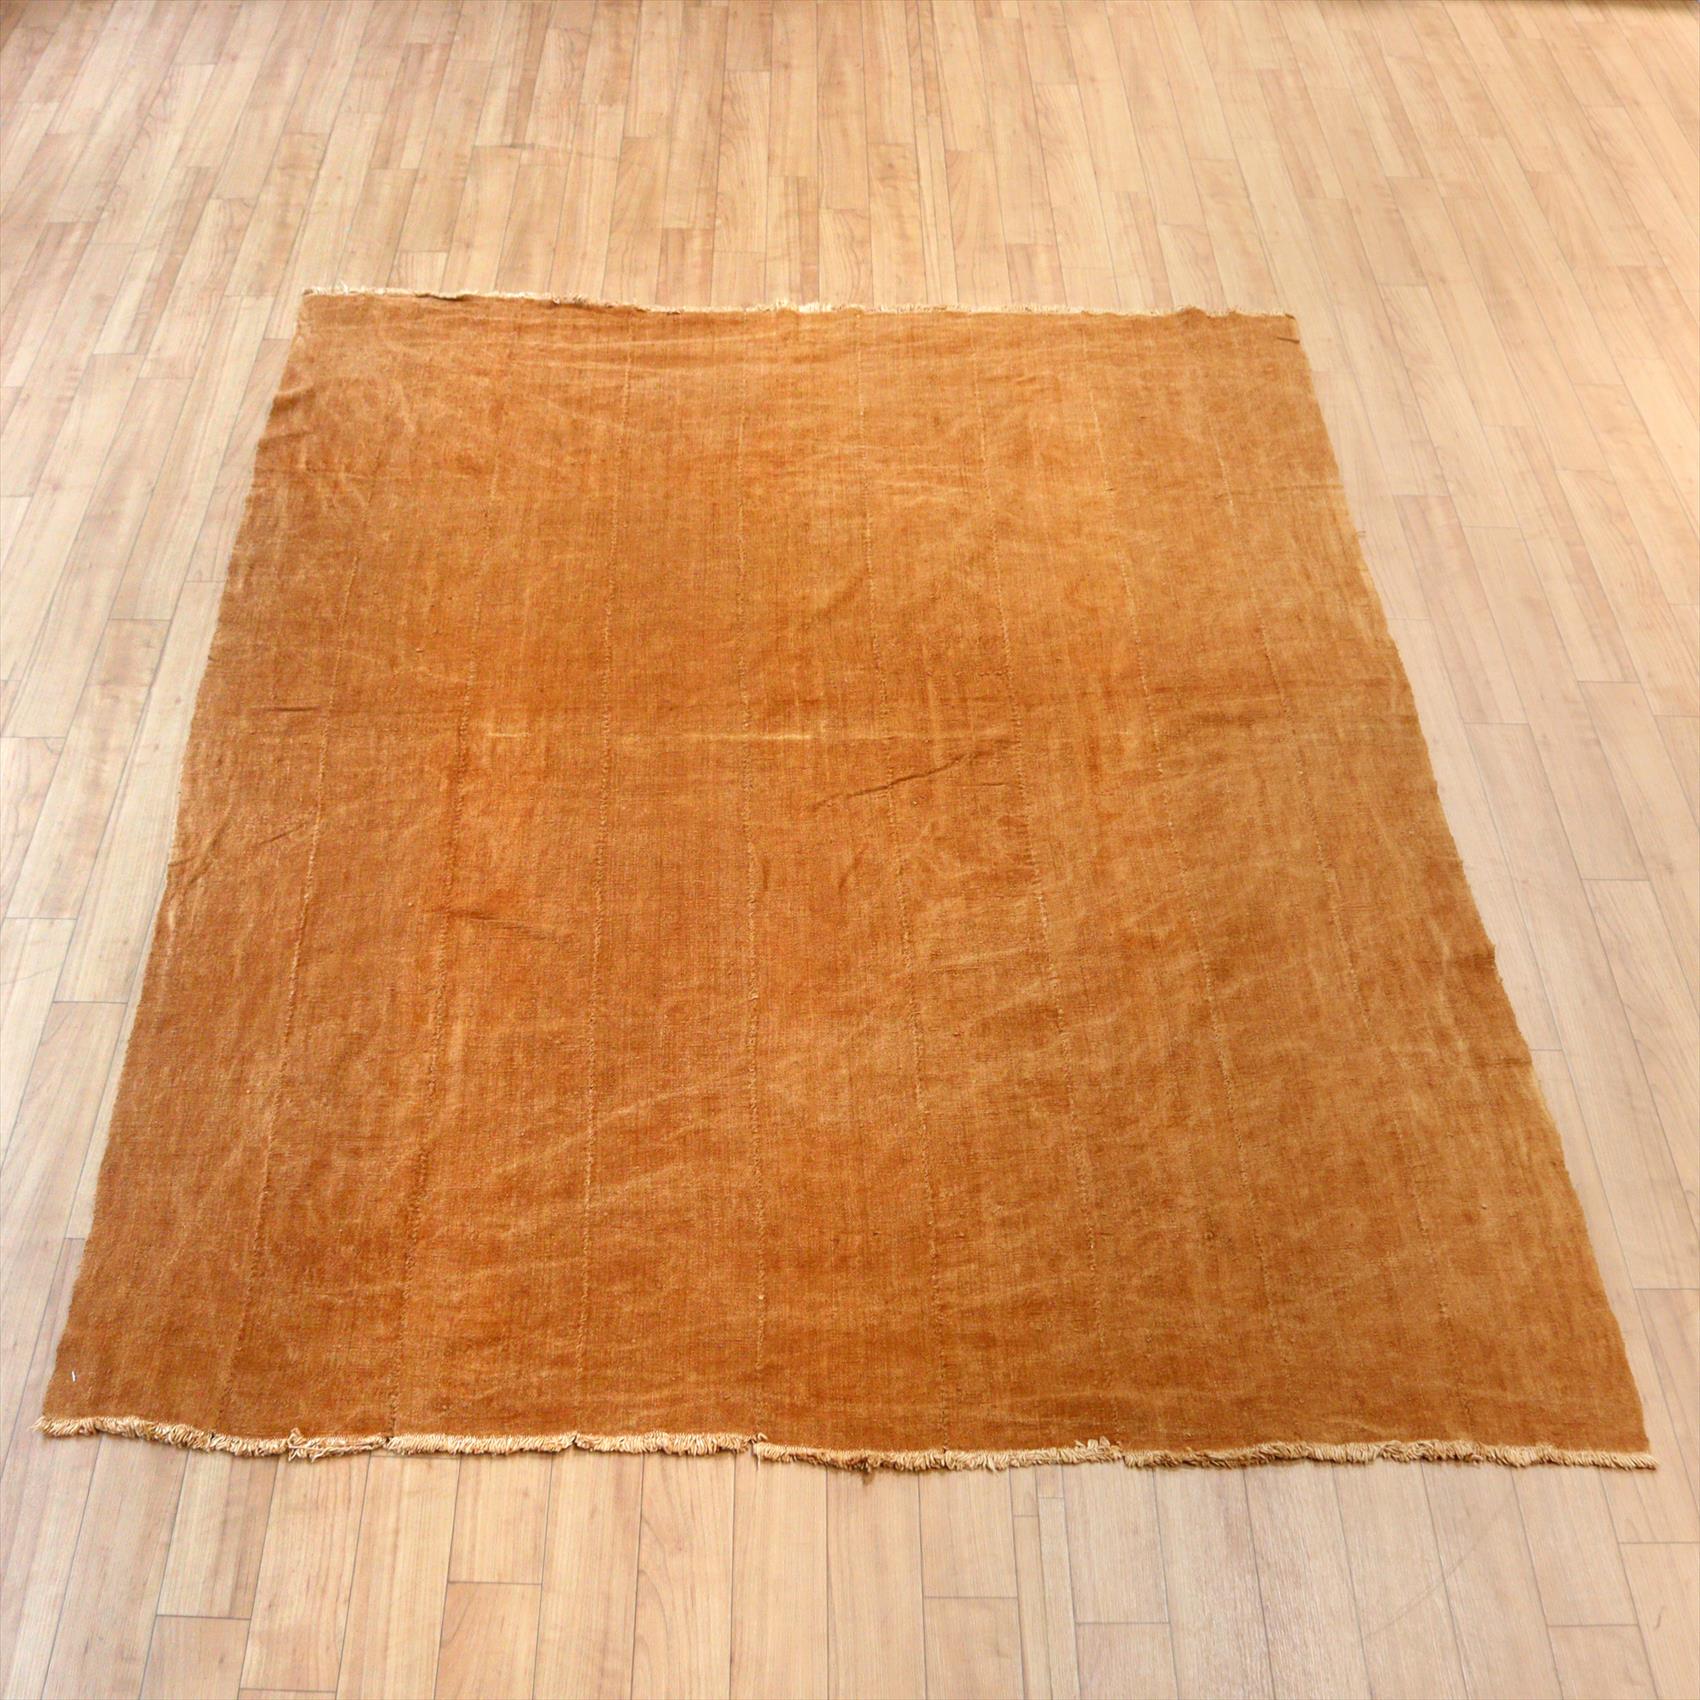 アフリカの泥染布 Mud Cloth Mali, African textile 178×133cm 無地 黄土色 Plain Cloth